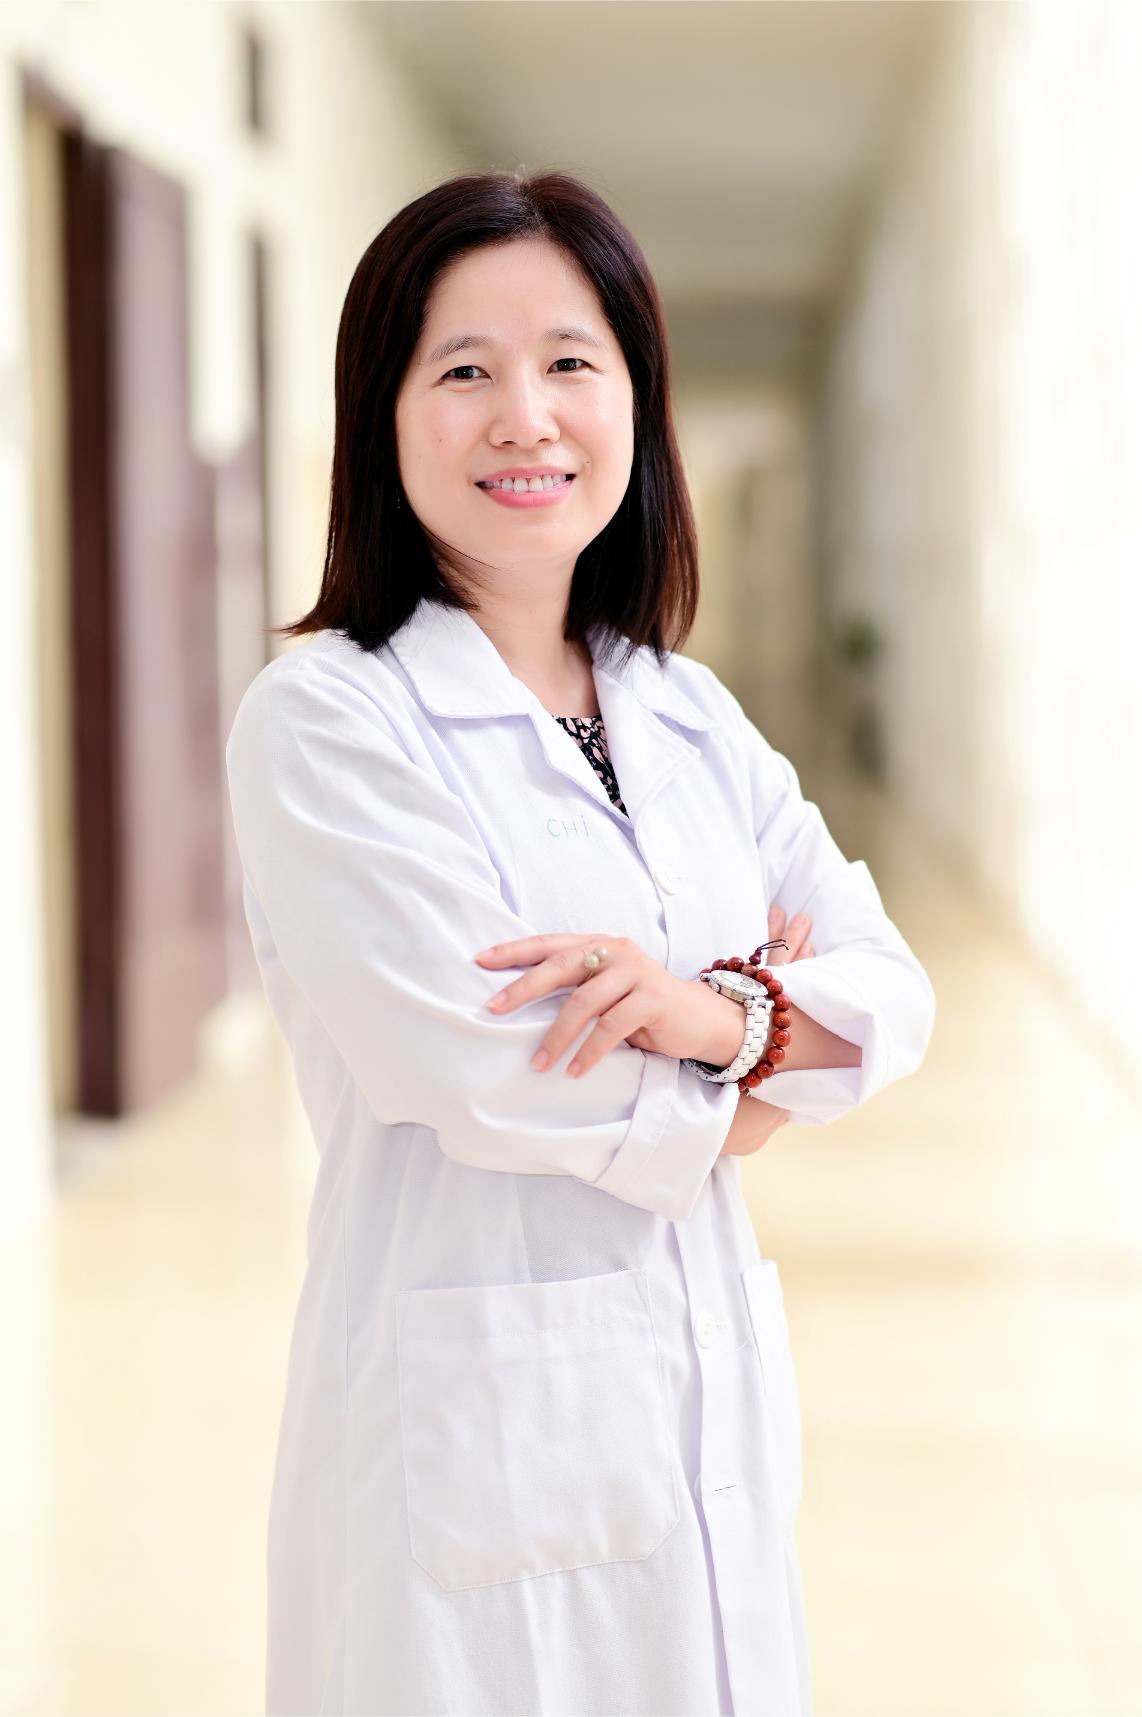 Tiến sĩ Trần Thị Kim Chi L’Oréal – UNESCO Vì sự phát triển phụ nữ công bố 3 nhà khoa học nữ đạt giải